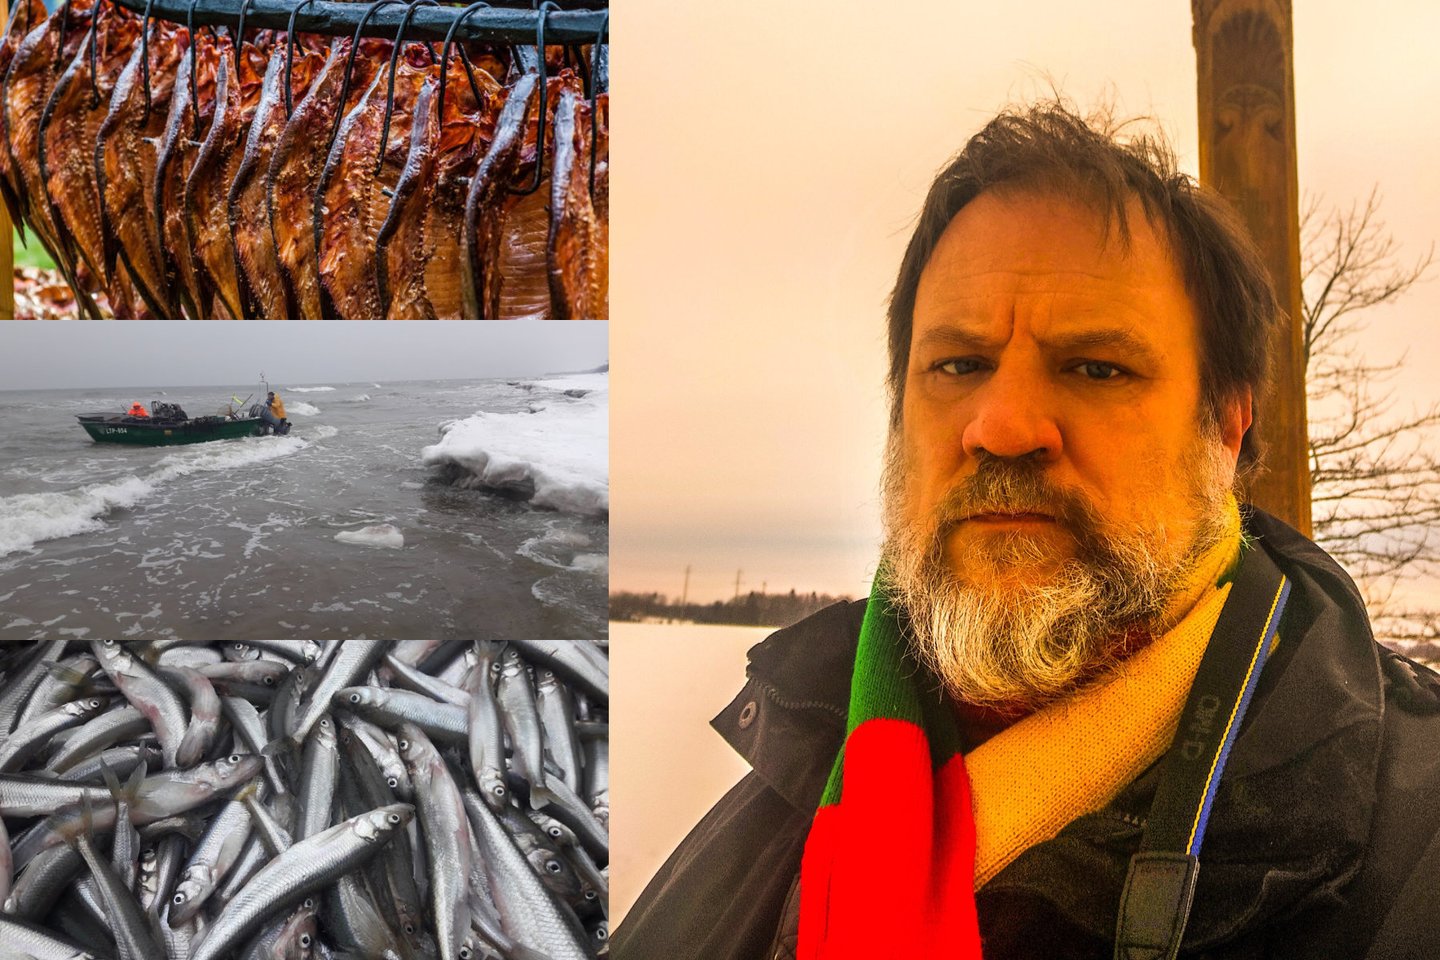 Valstybė nesugrius, gamtai nuo to blogiau nebus, rūkyta žuvis neišnyks, šaldytos atveš iš kaimyninės Kaliningrado srities, Lenkijos, Latvijos ir gal dar iš kur nors, bet visais atvejais iš ten, kur valstybės išteklius naudoja, o ne marinuoja. <br> E. Paplauskio nuotr.